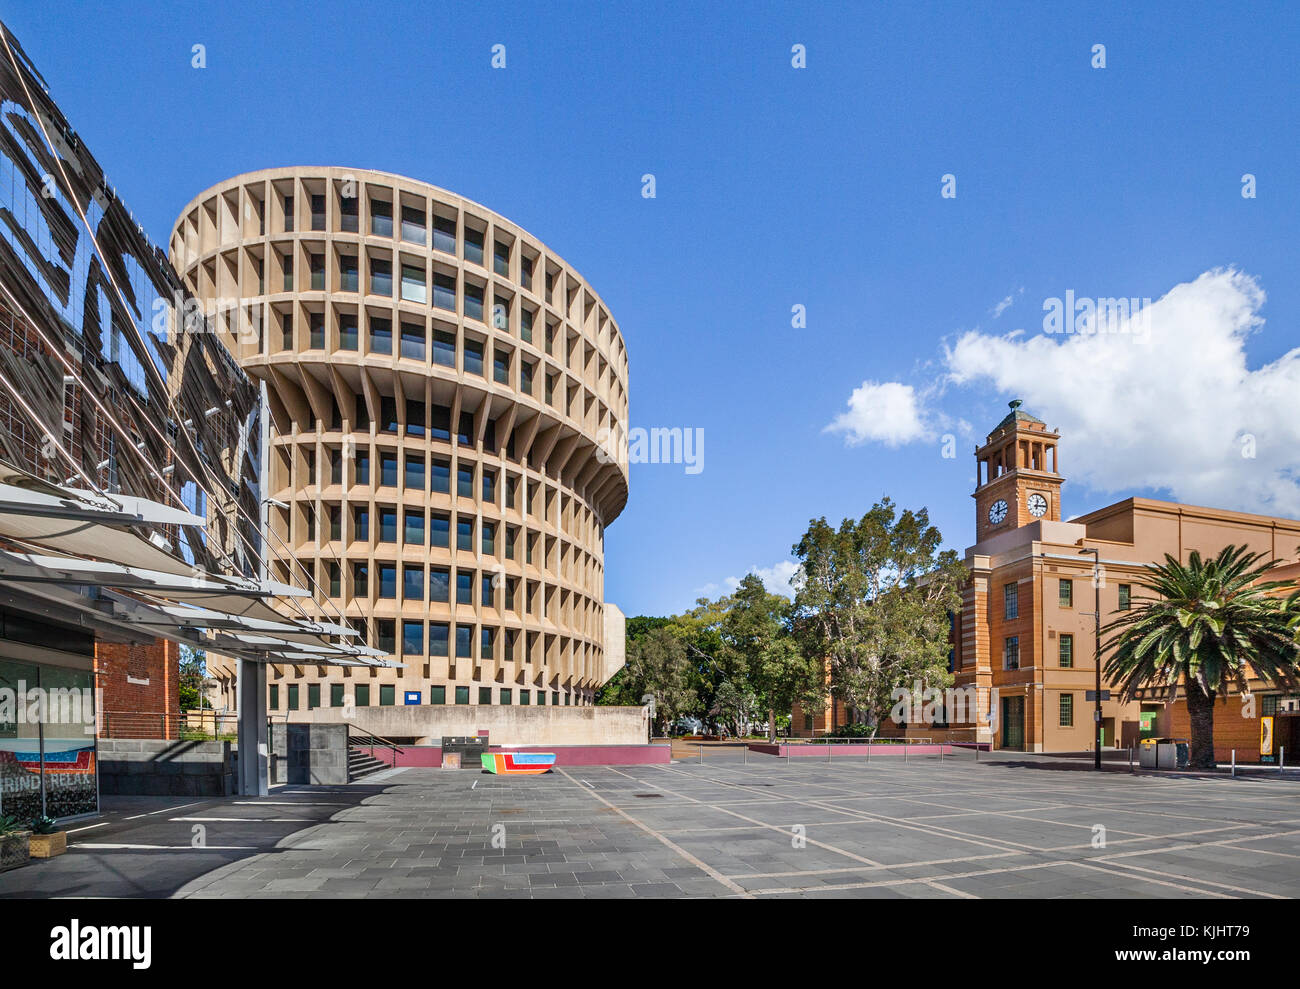 L'Australie, Nouvelle Galles du Sud, Newcastle, Wheeler Place, vue de la ville de Newcastle City Centre Conseil d'administration, également connu comme Le Roundhouse ou T Banque D'Images